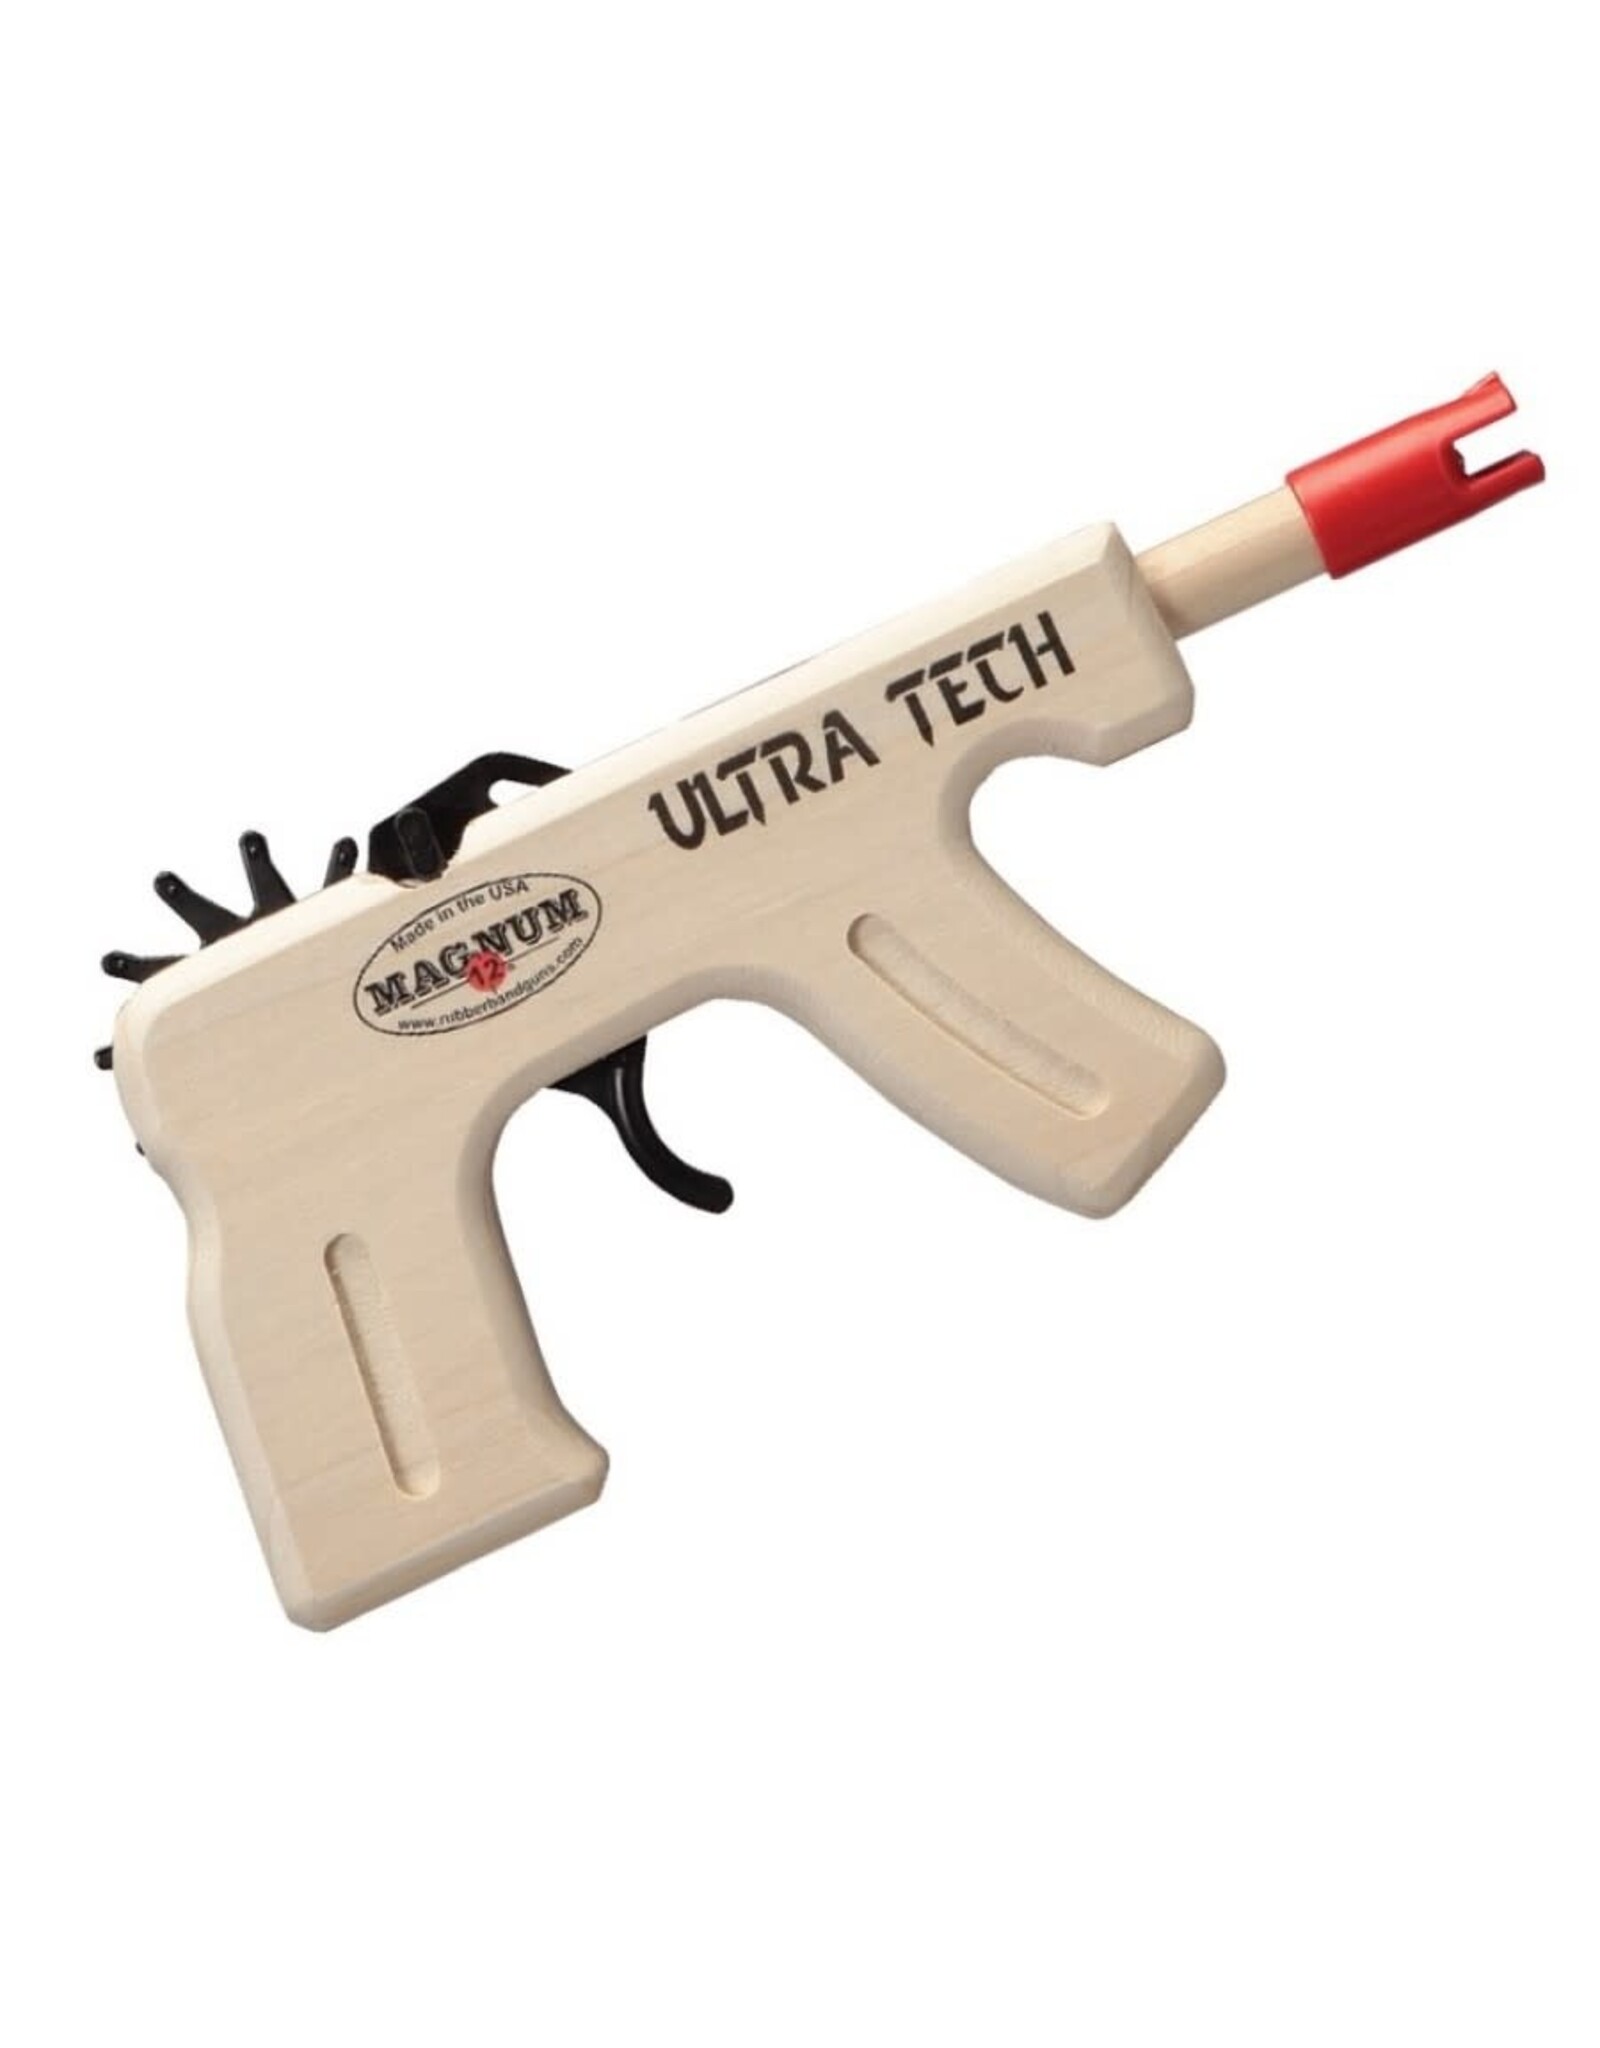 Magnum 12 Ultra Tech Pistol Rubberband Gun